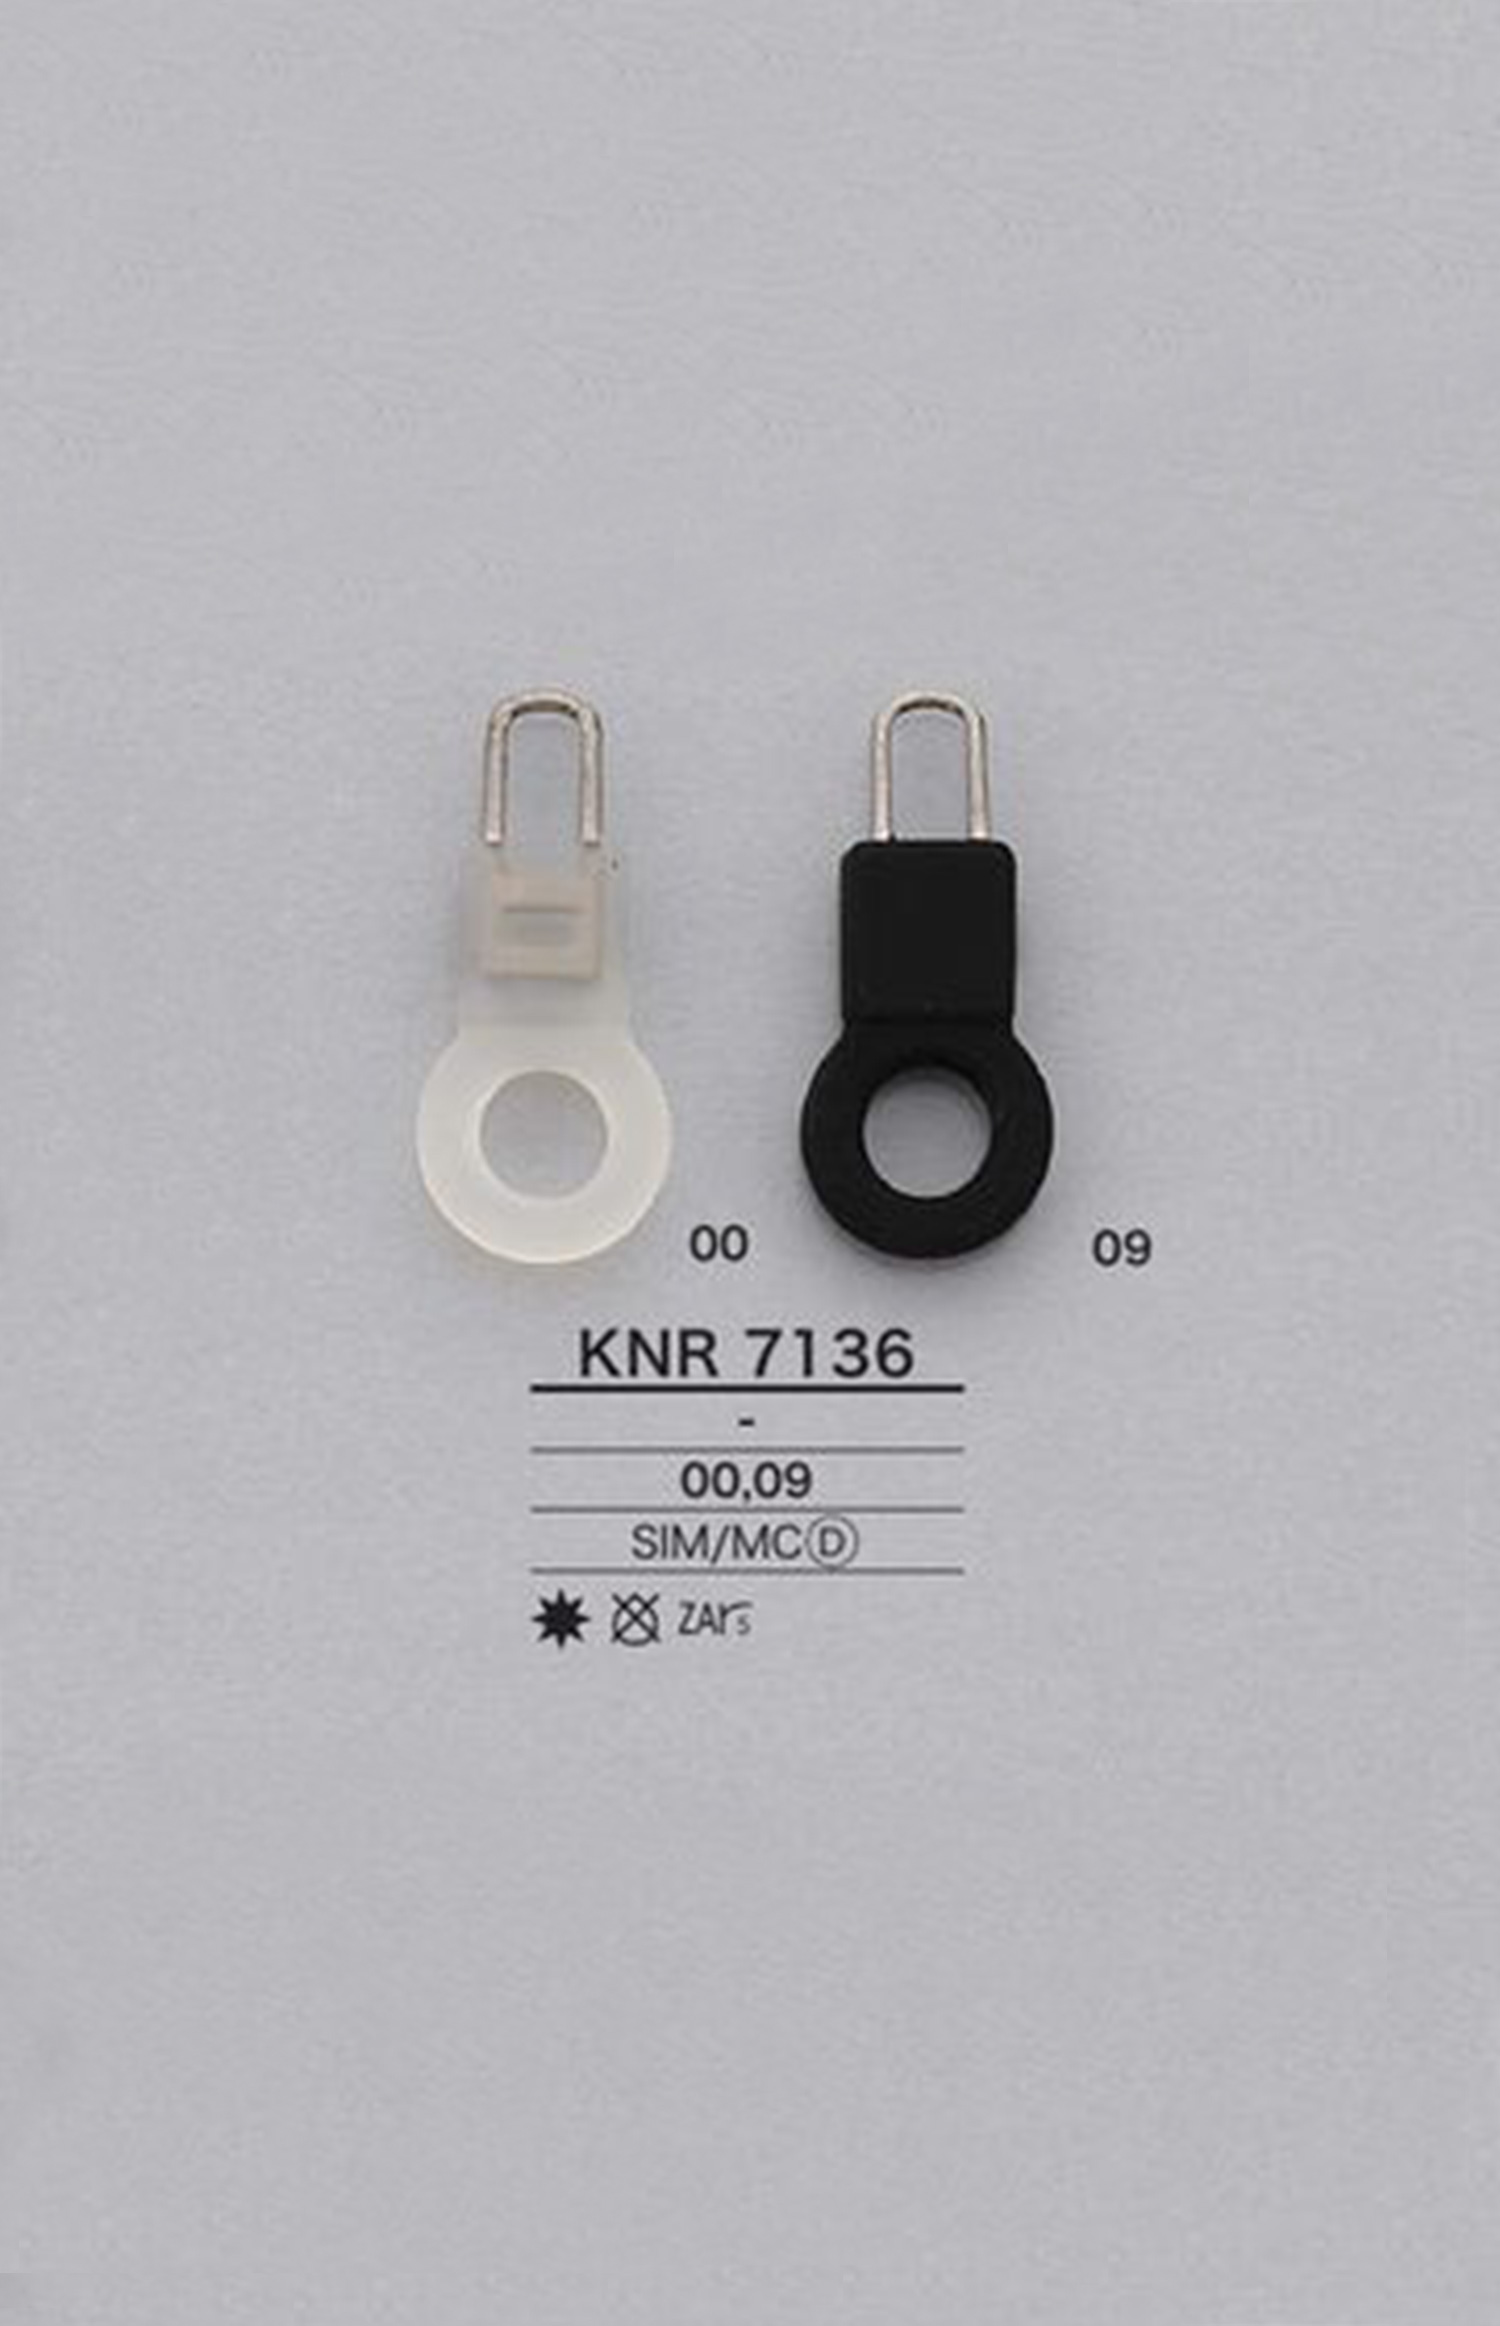 KNR7136 Silikonring Reißverschlusspunkt (Zuglasche) IRIS